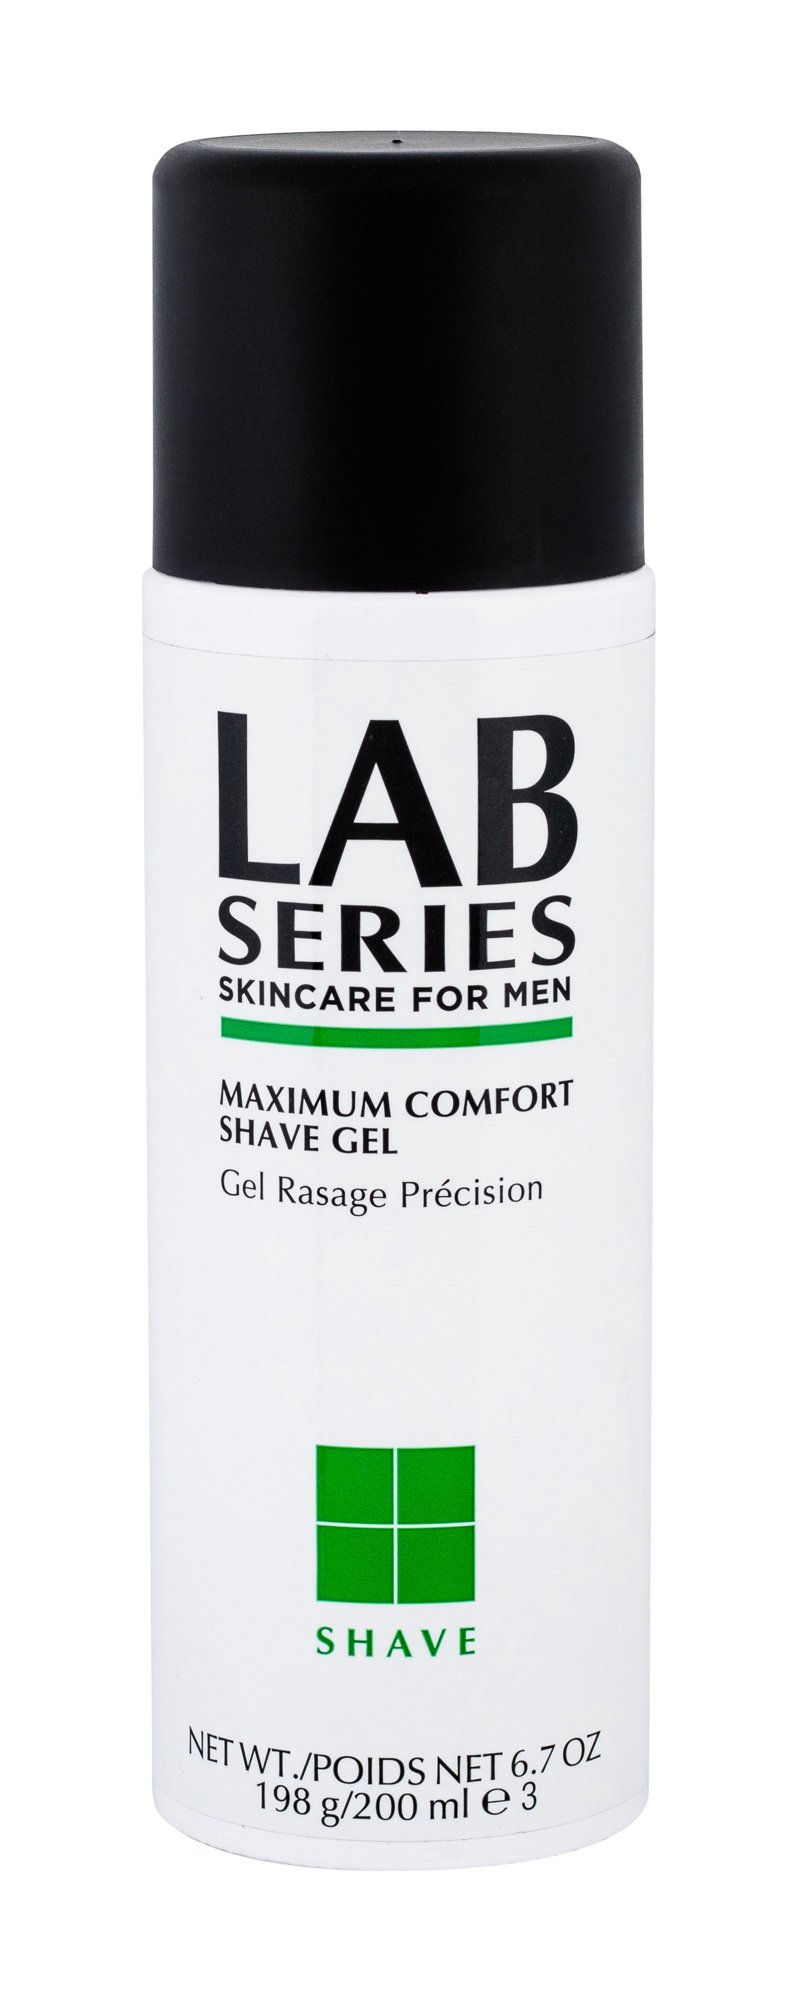 Lab Series Shave Maximum Comfort Shave Gel 200ml skutimosi gelis